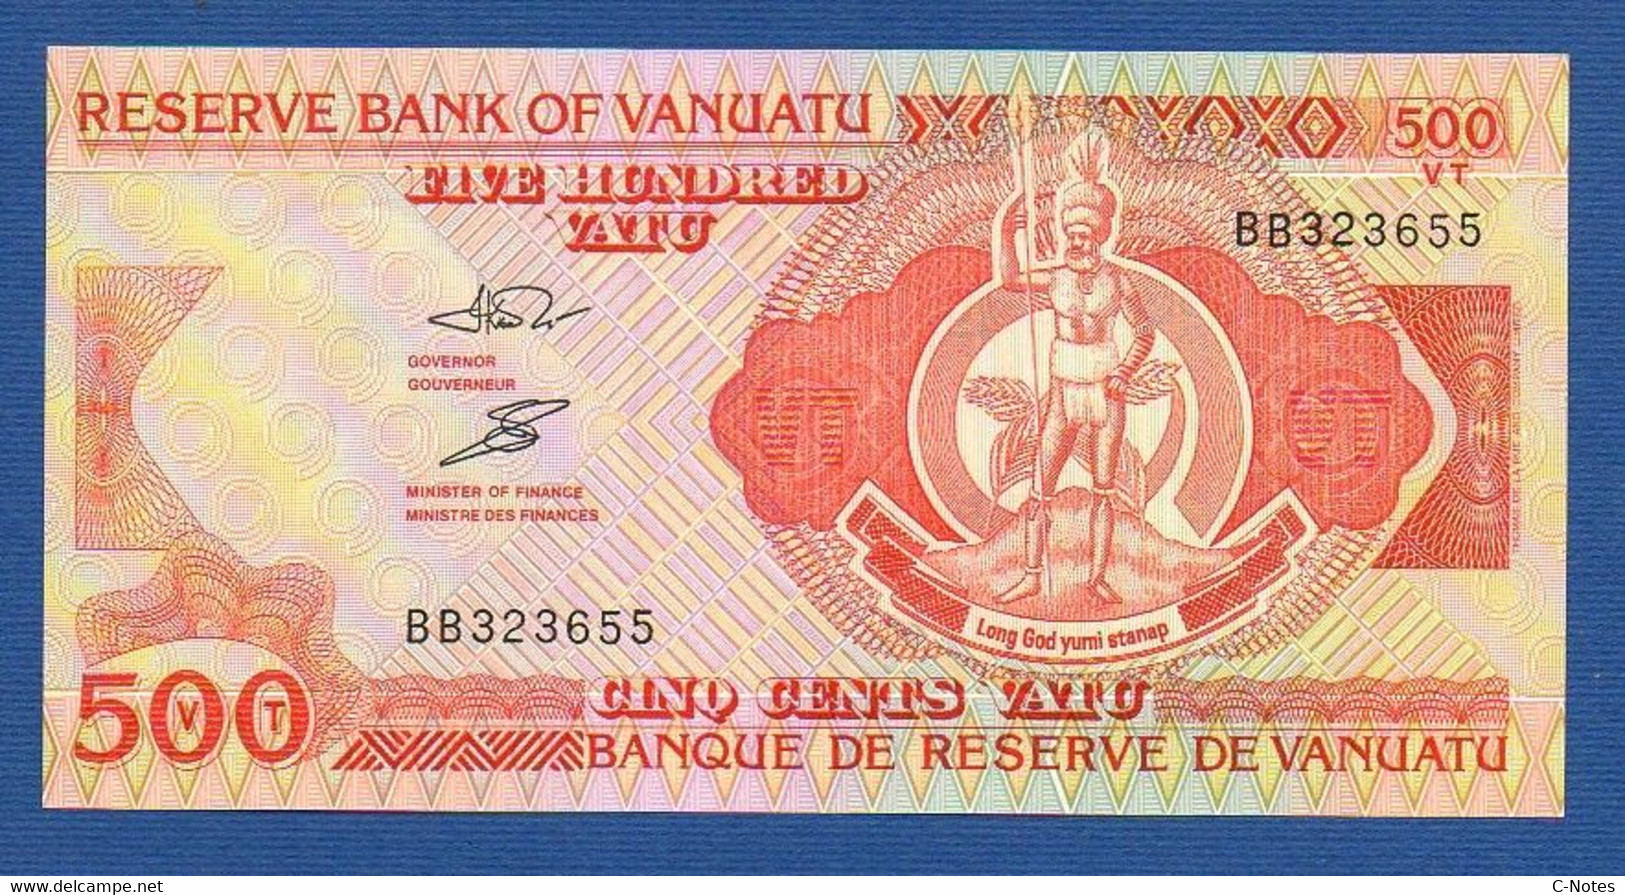 VANUATU - P. 5a – 500 VATU  ND (1993 & 2006) - UNC Prefix BB 323655 - Vanuatu